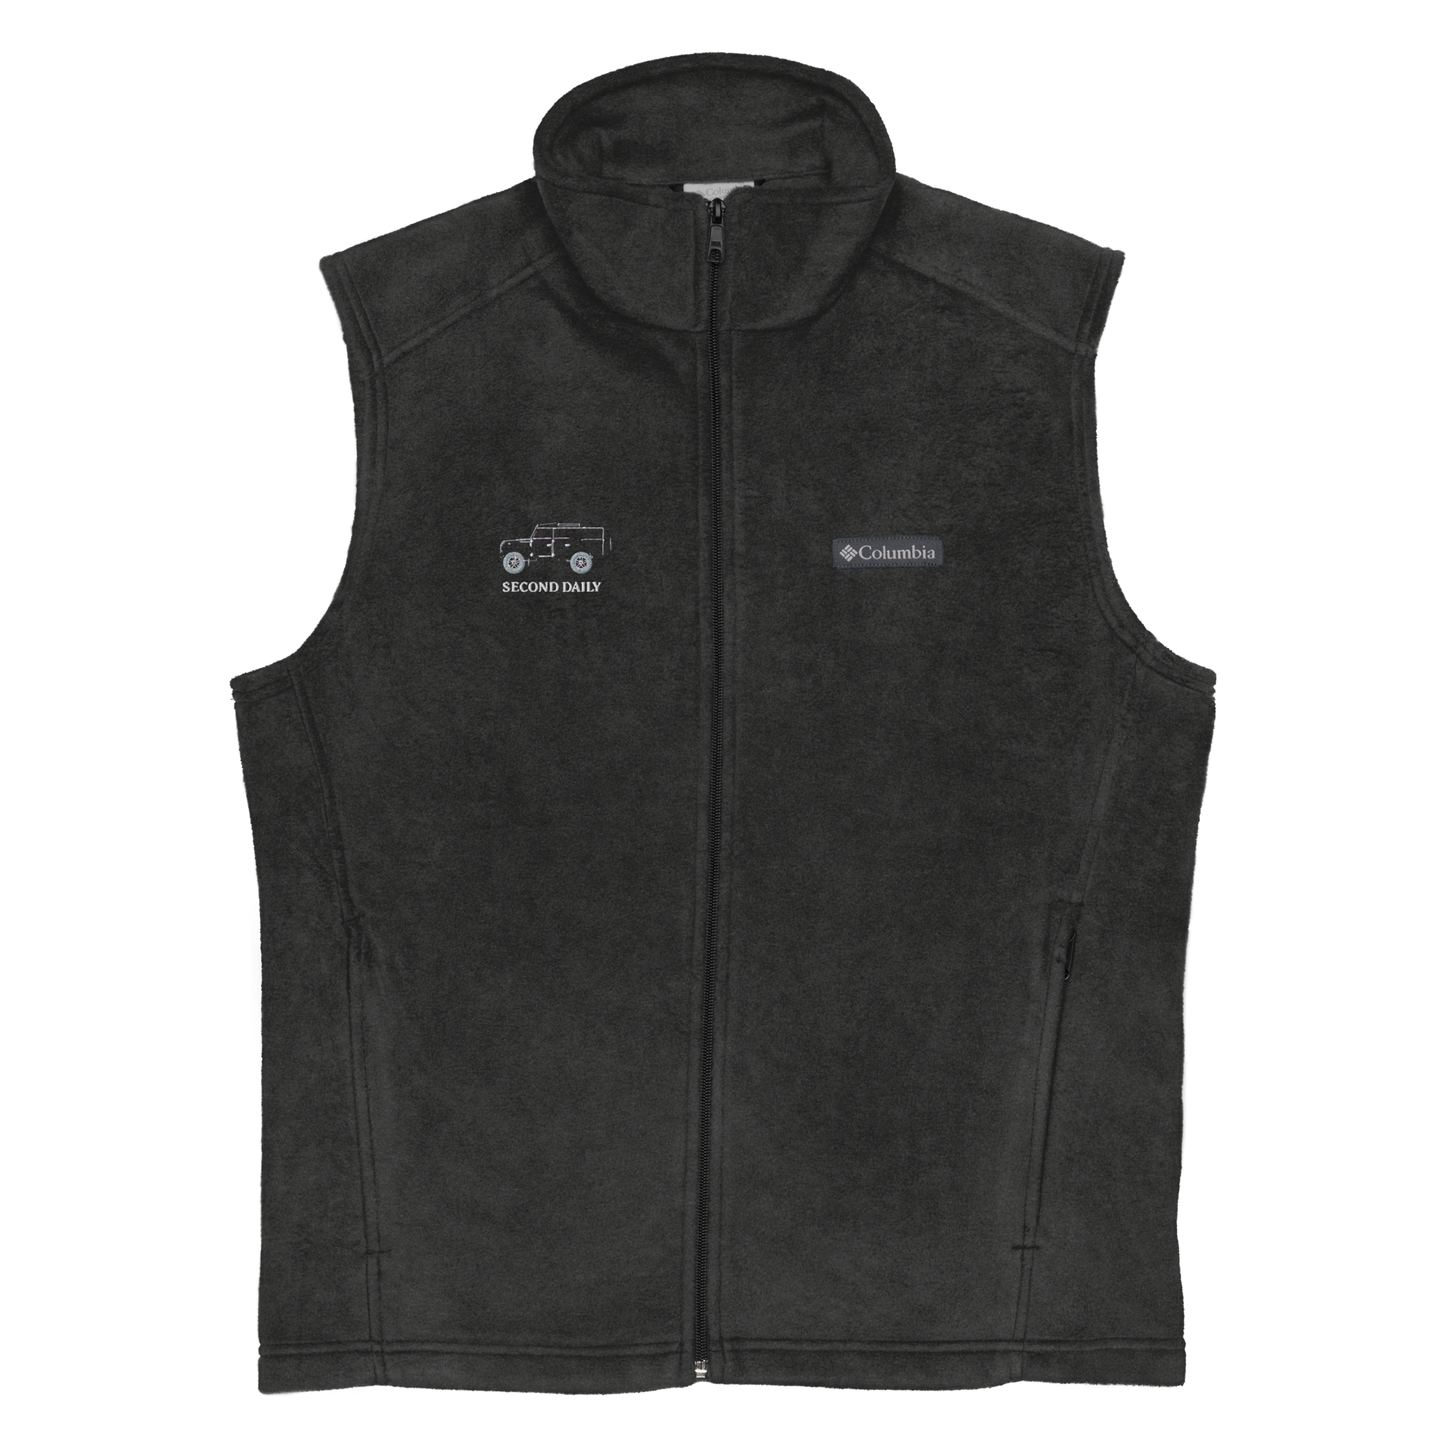 Defender 90 - Columbia fleece vest